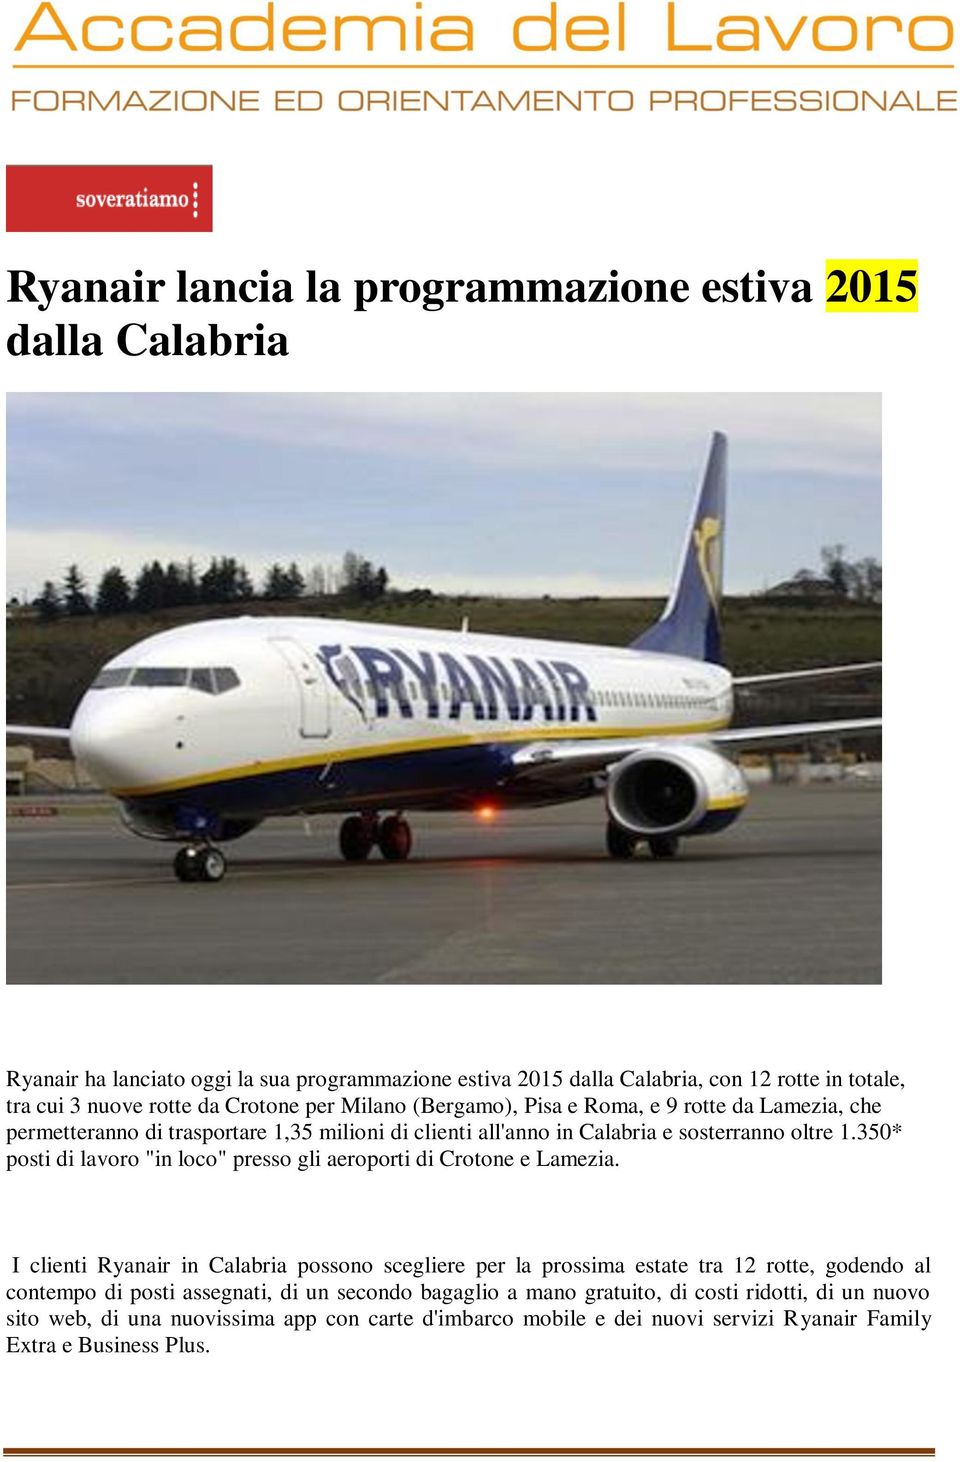 350* posti di lavoro "in loco" presso gli aeroporti di Crotone e Lamezia.